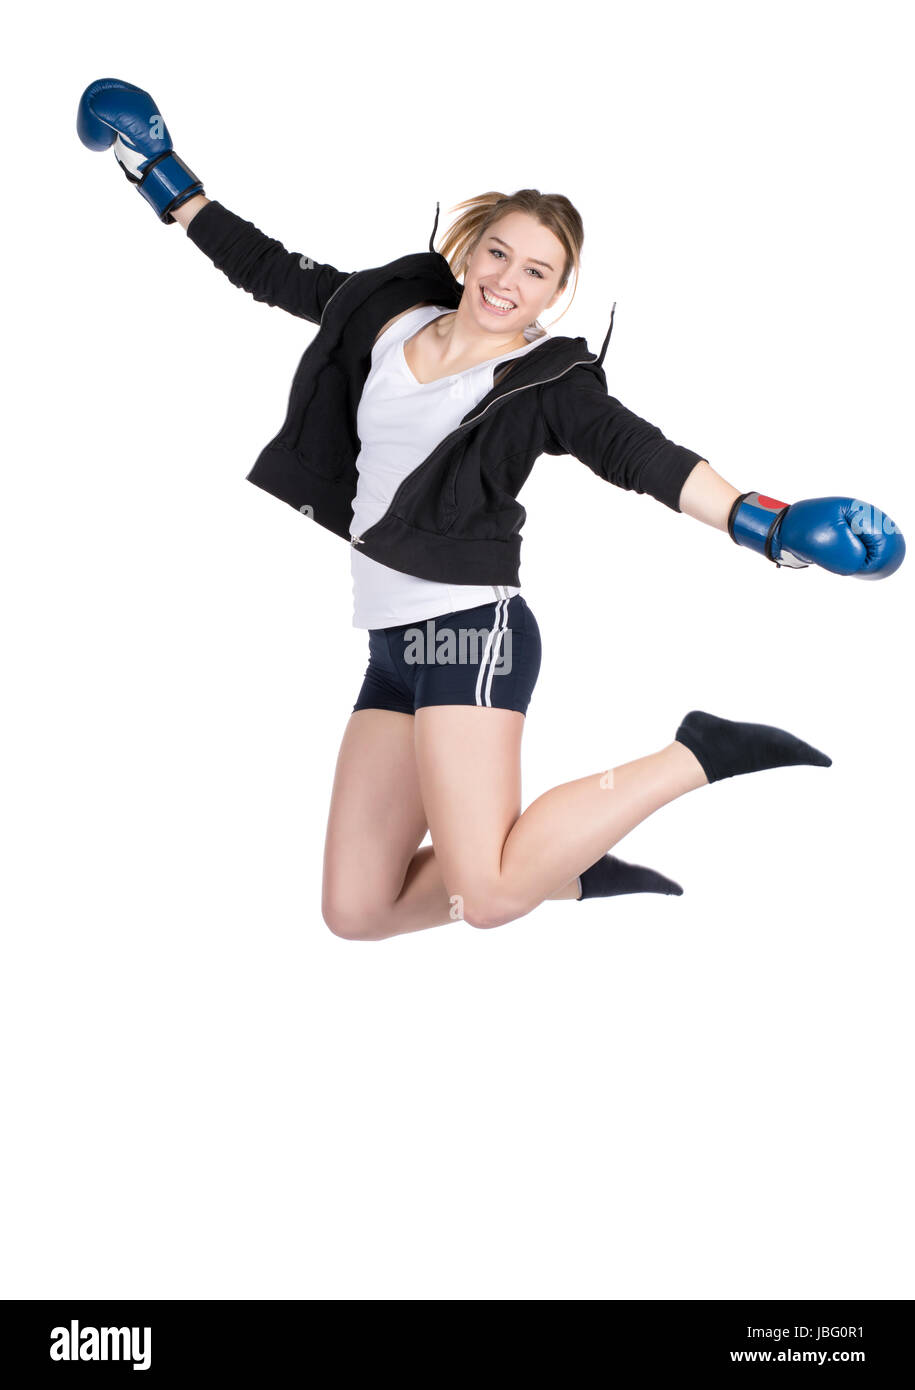 Freigestelltes Foto einer jungen lächelden Boxerin im Kapuzenpulli und mit blauen Boxhandschuhen, die in die Luft springt Stock Photo